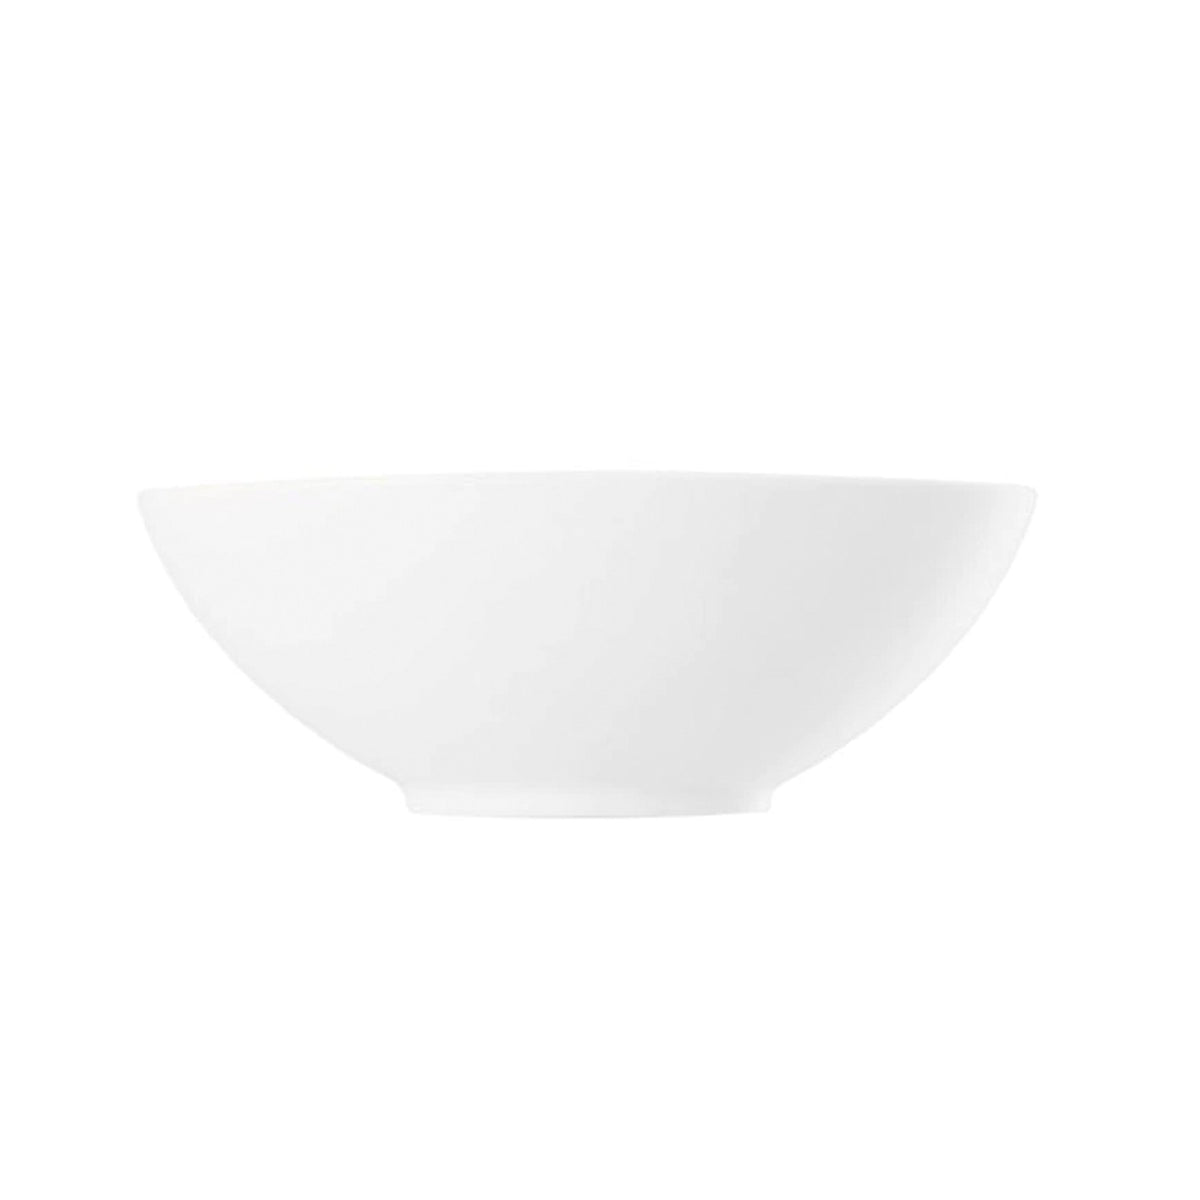 Loft White Porcelain Oval Bowl